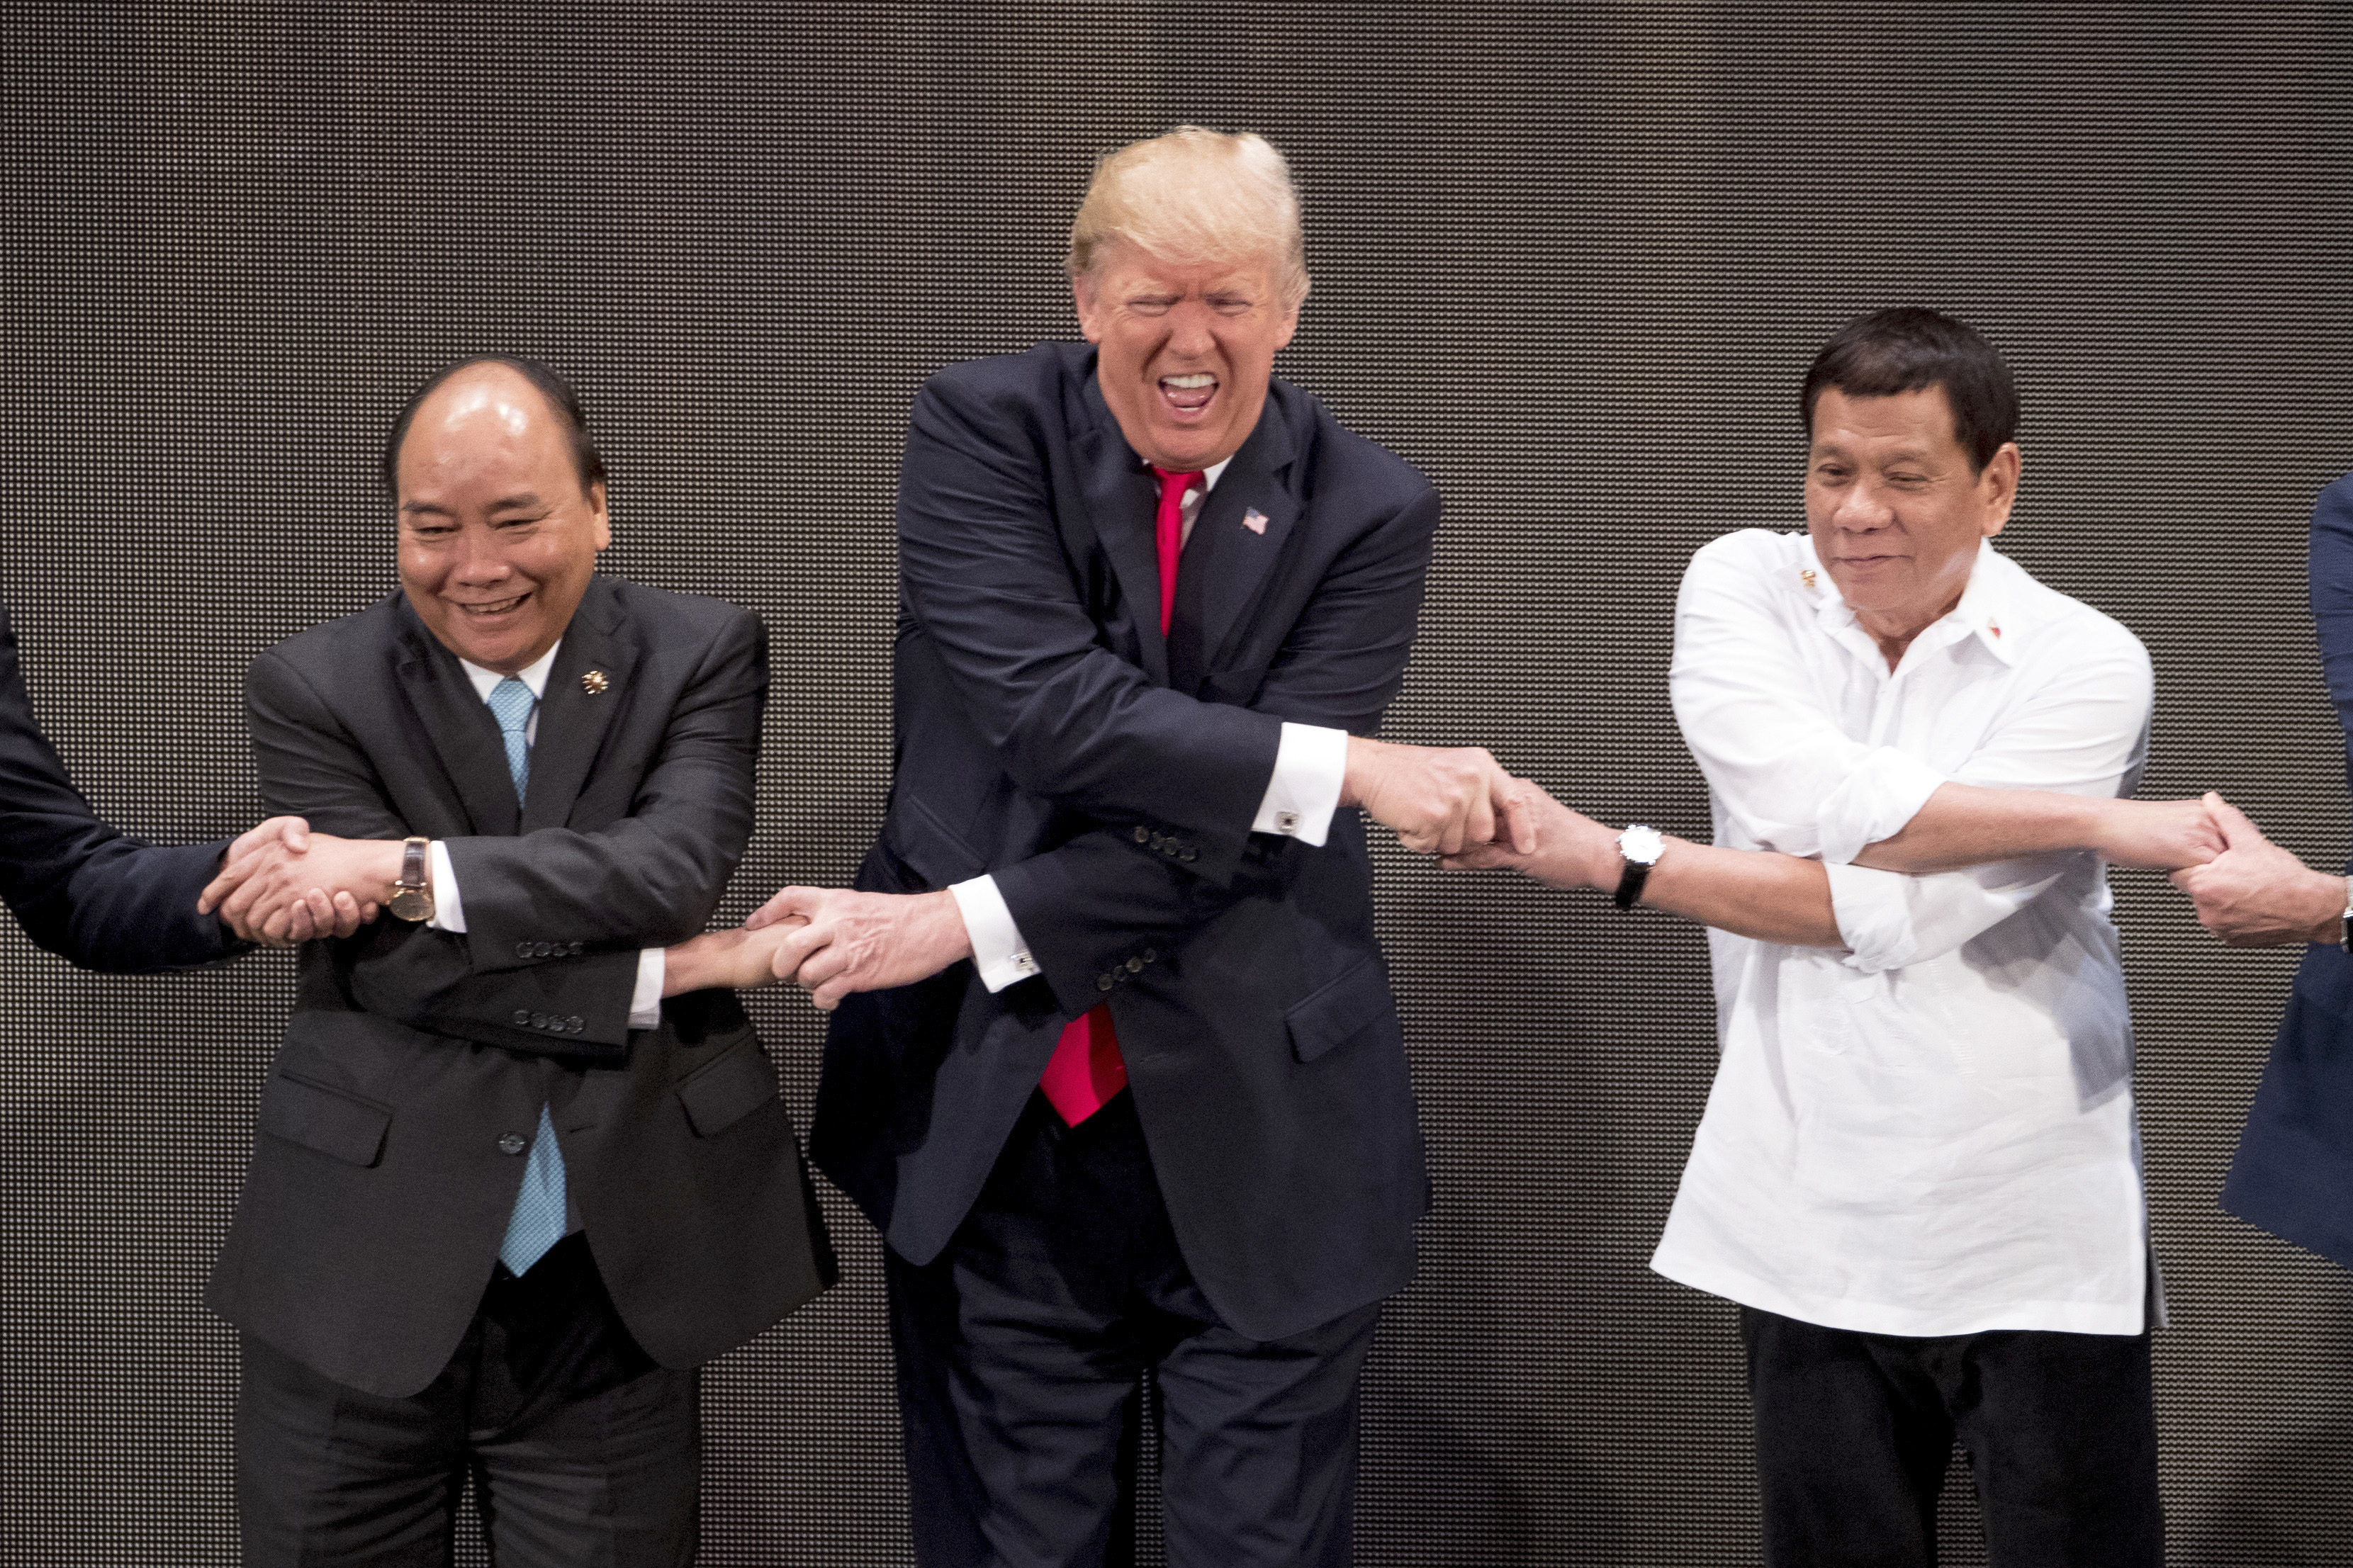 13 ноември 2017, среща на върха на АСЕАН: Тръмп между виетнамския и филипинския премиери Нгуен Суан Фук и Родриго Дутерте